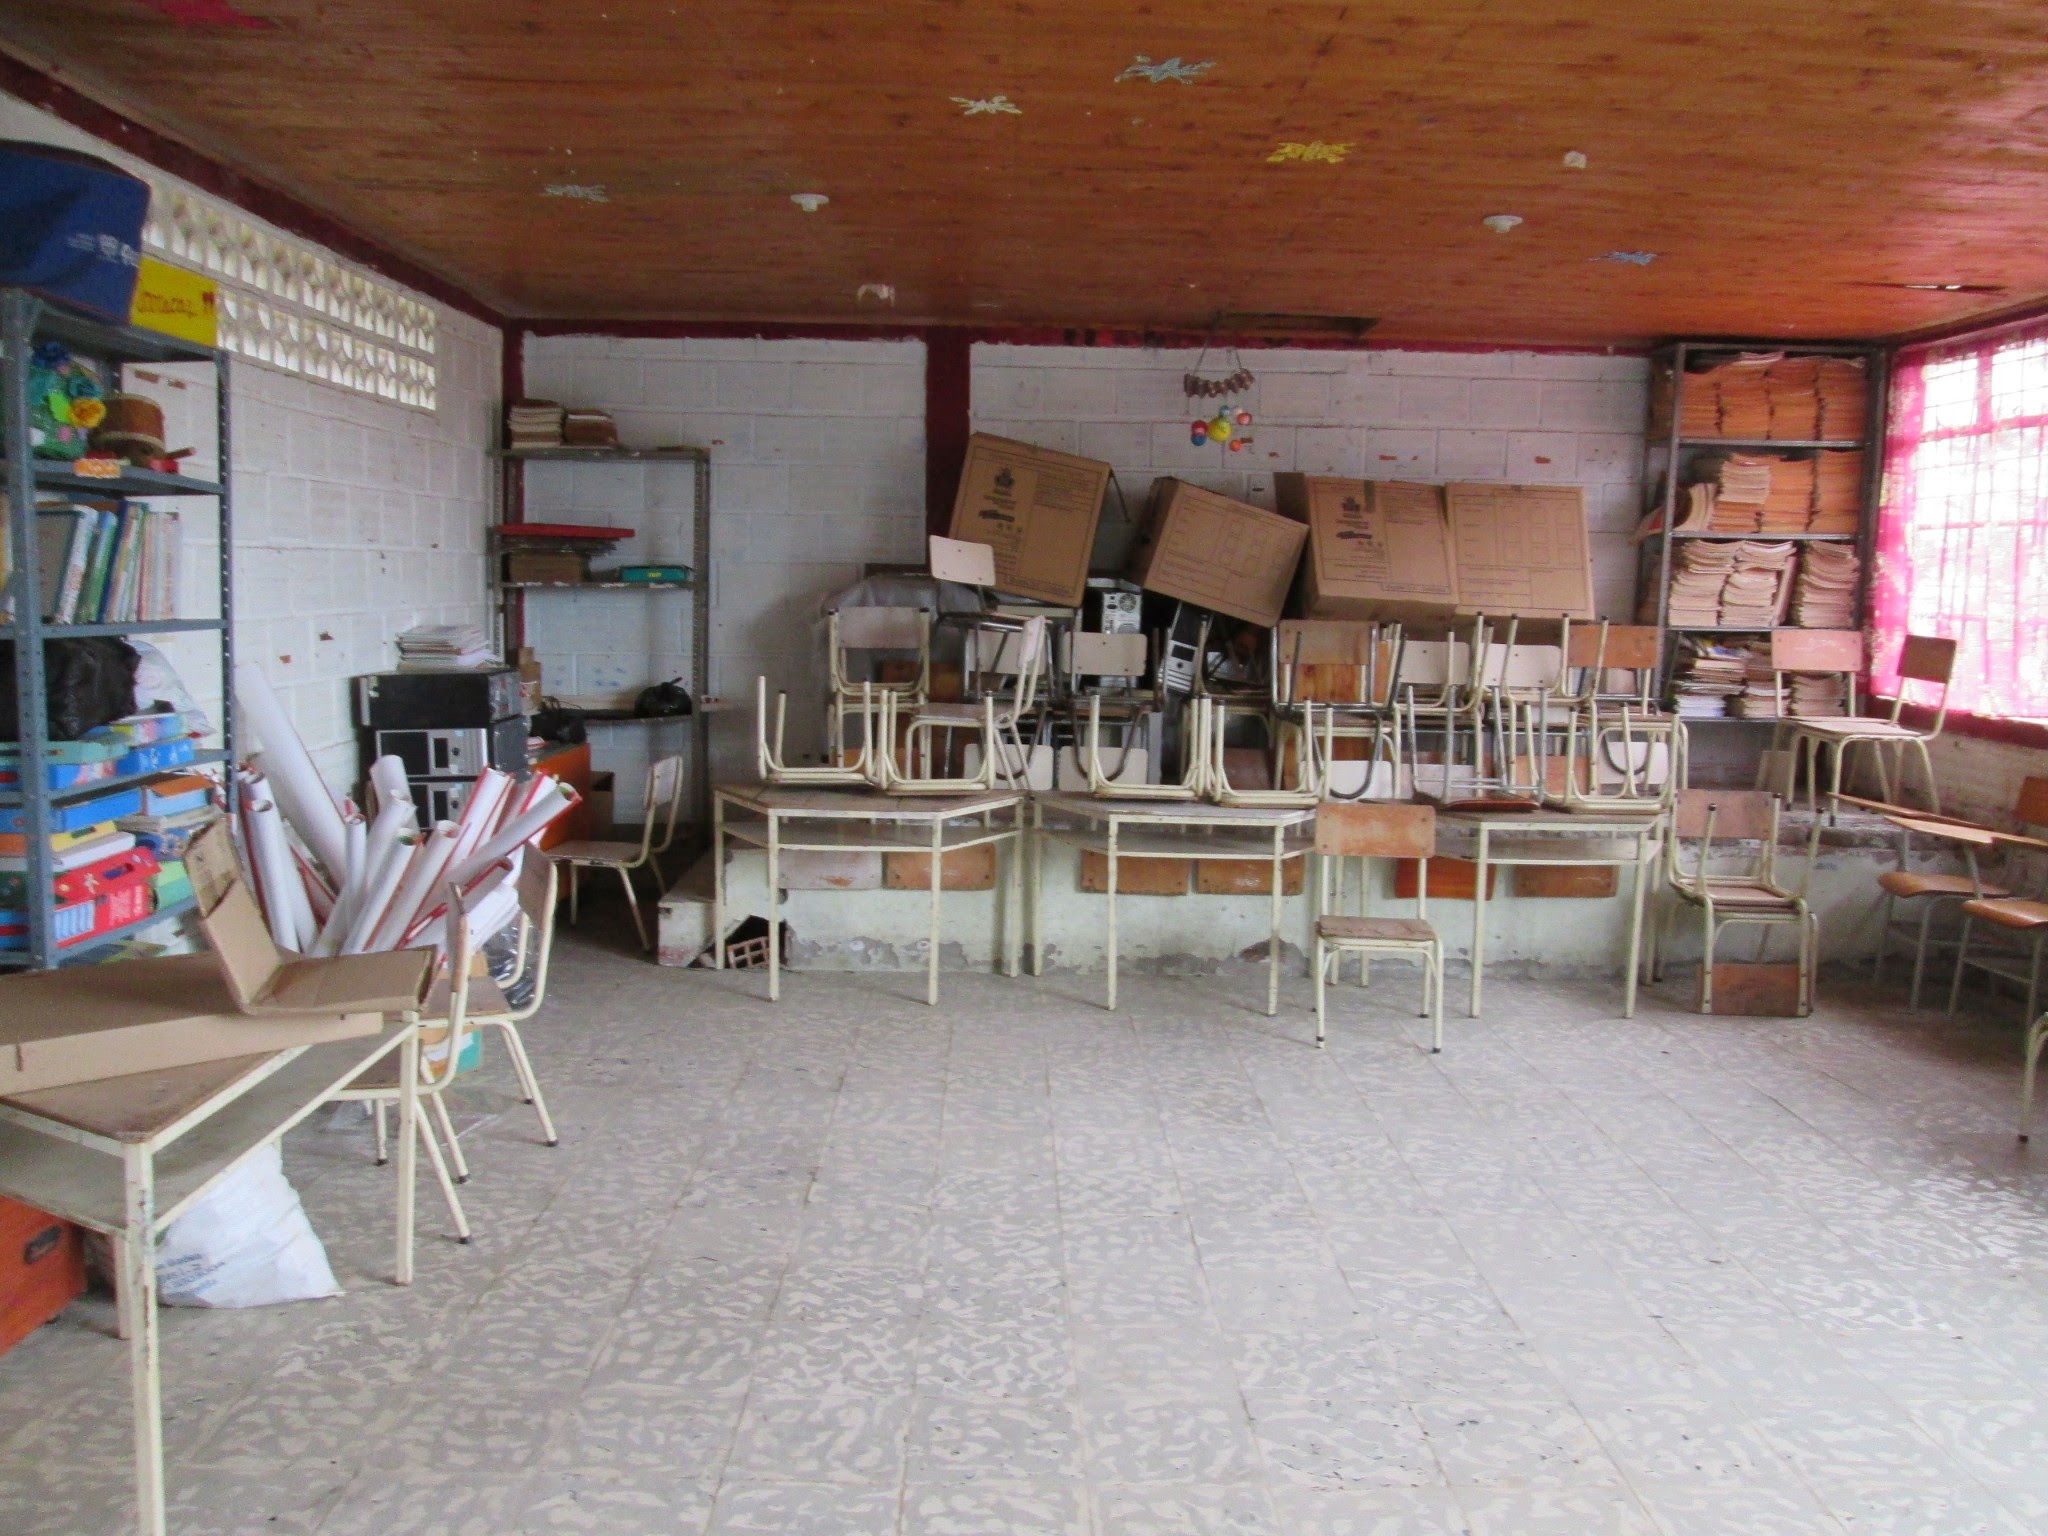 Estado previo del aula de la escuela abandonada y convertida en cuarto de almacenamiento de cosas viejas, dañadas y olvidadas.